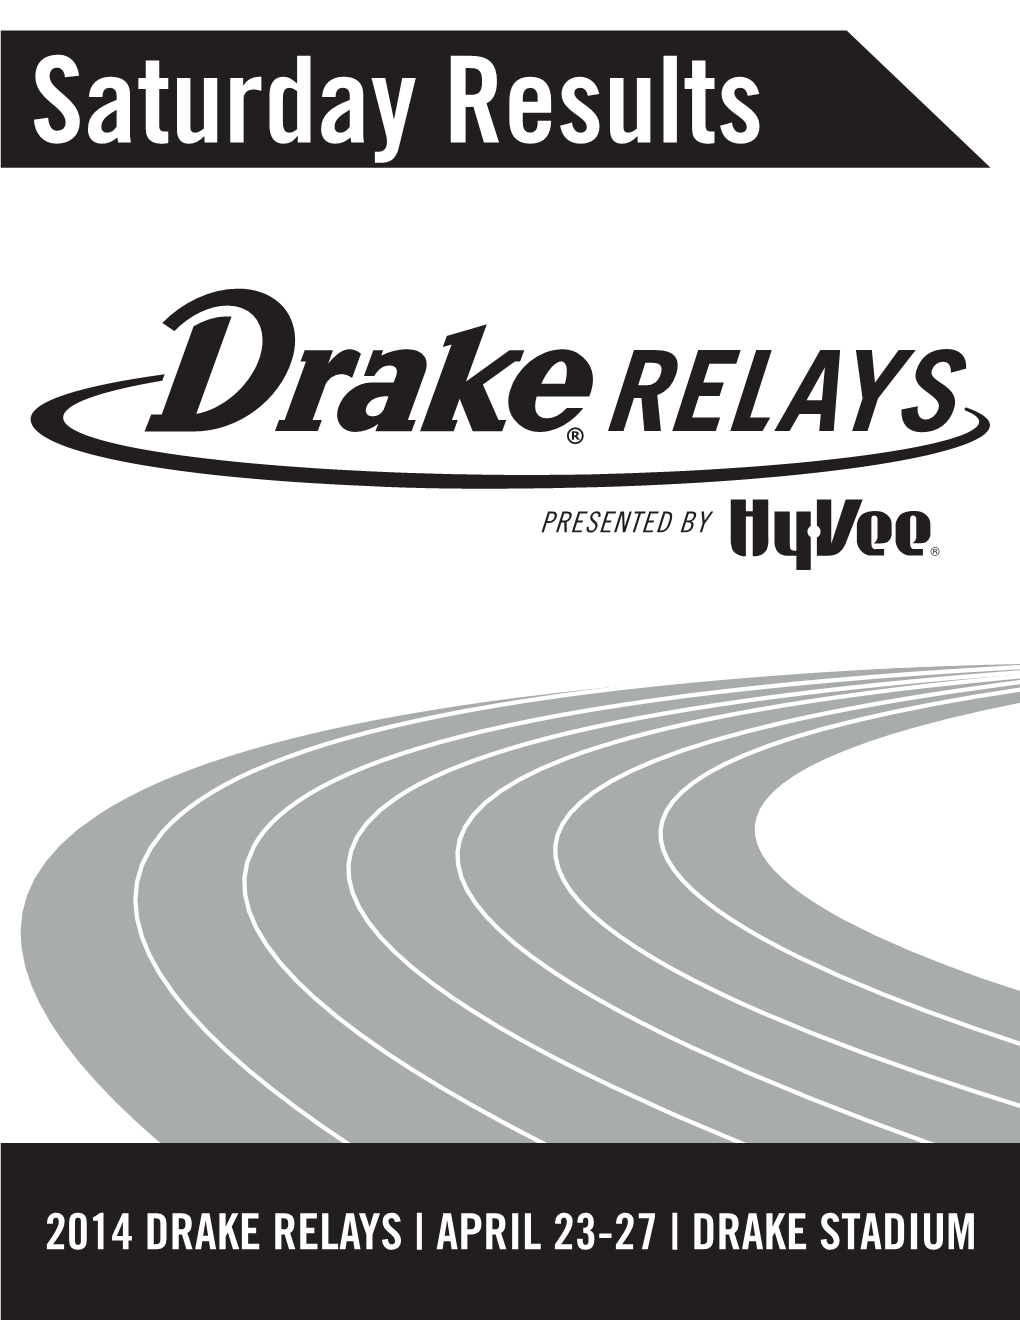 2014 Drake Relays